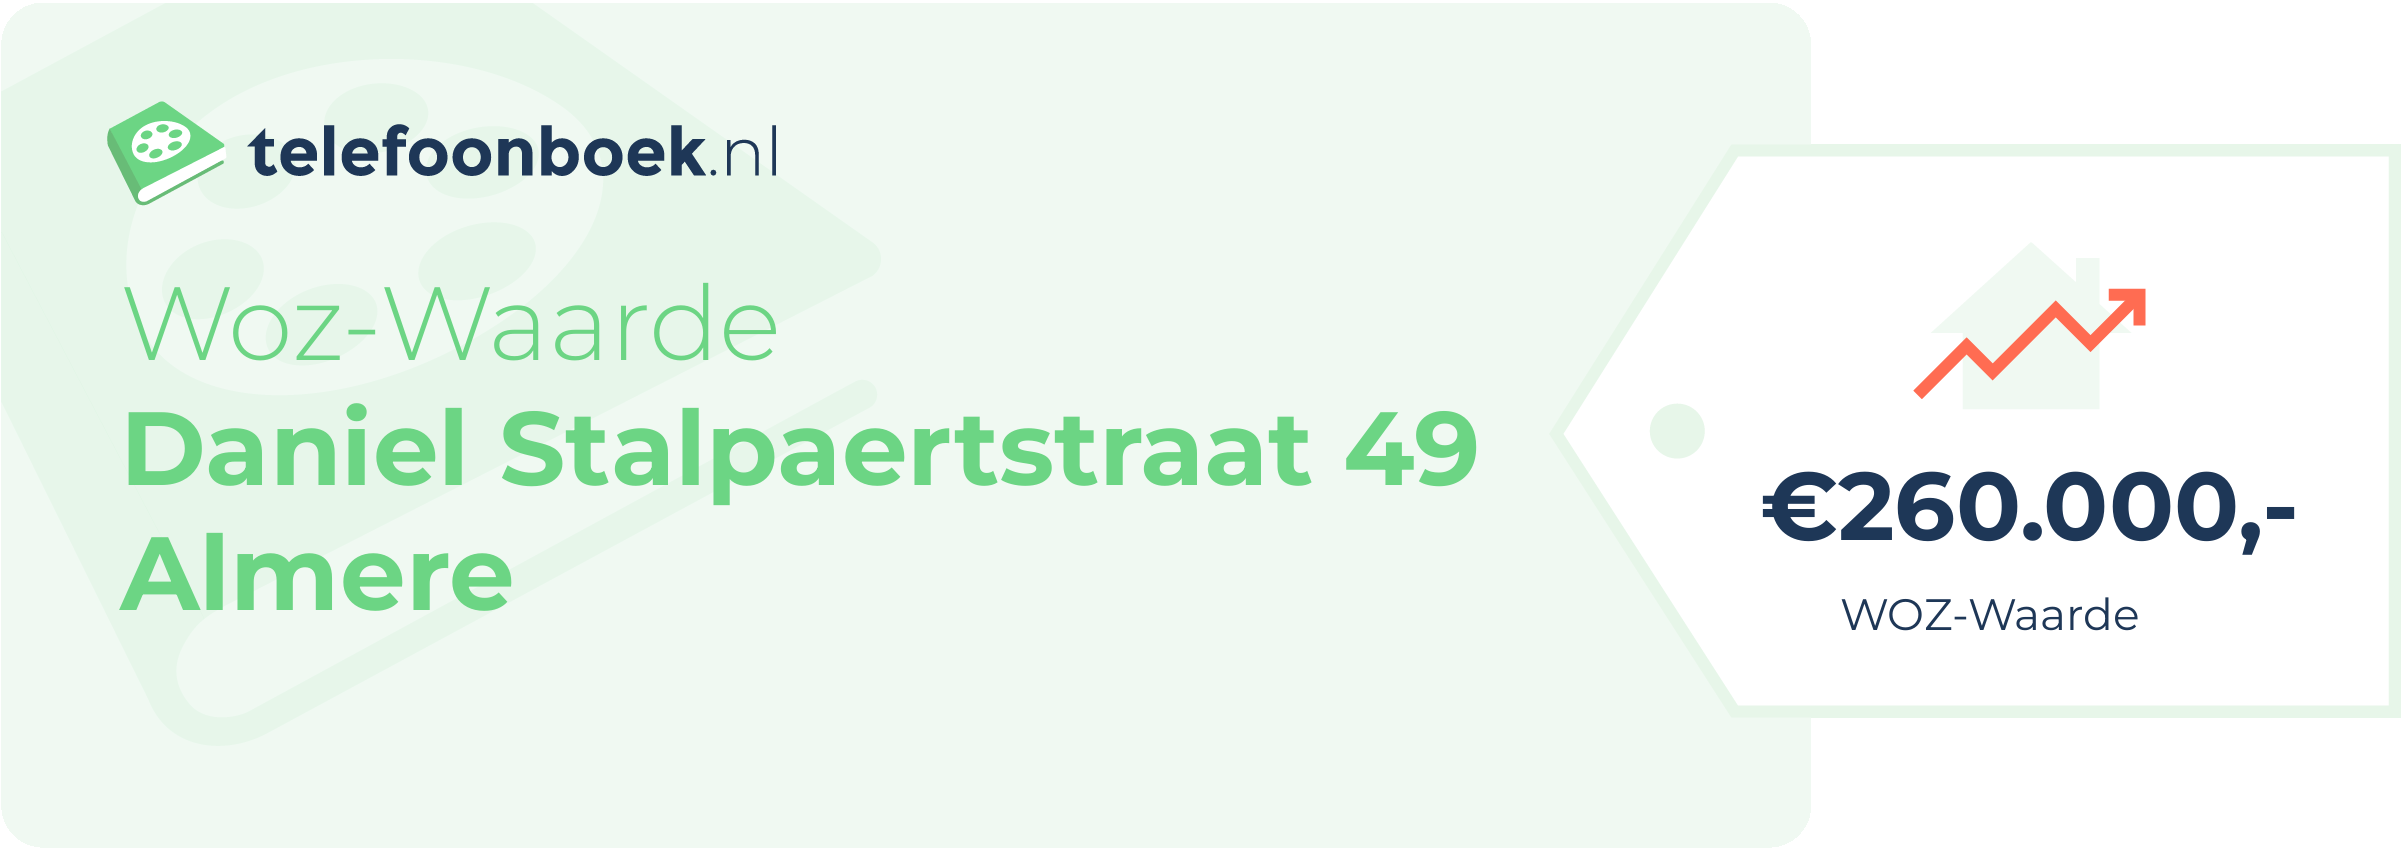 WOZ-waarde Daniel Stalpaertstraat 49 Almere